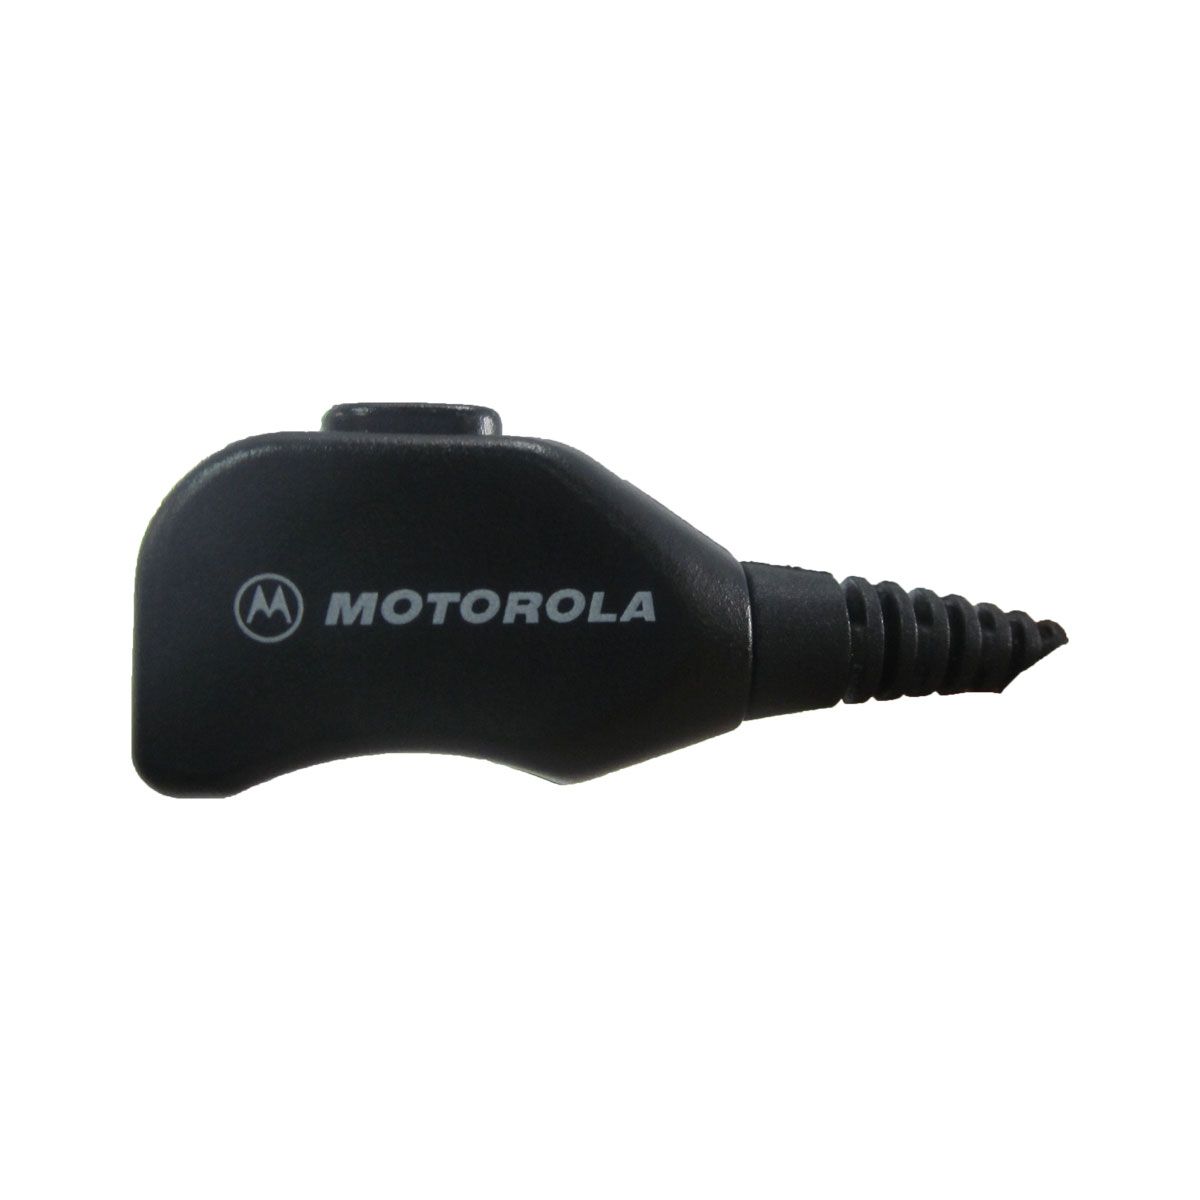 Auricular Motorola manos libres PMLN5642A tipo escolta